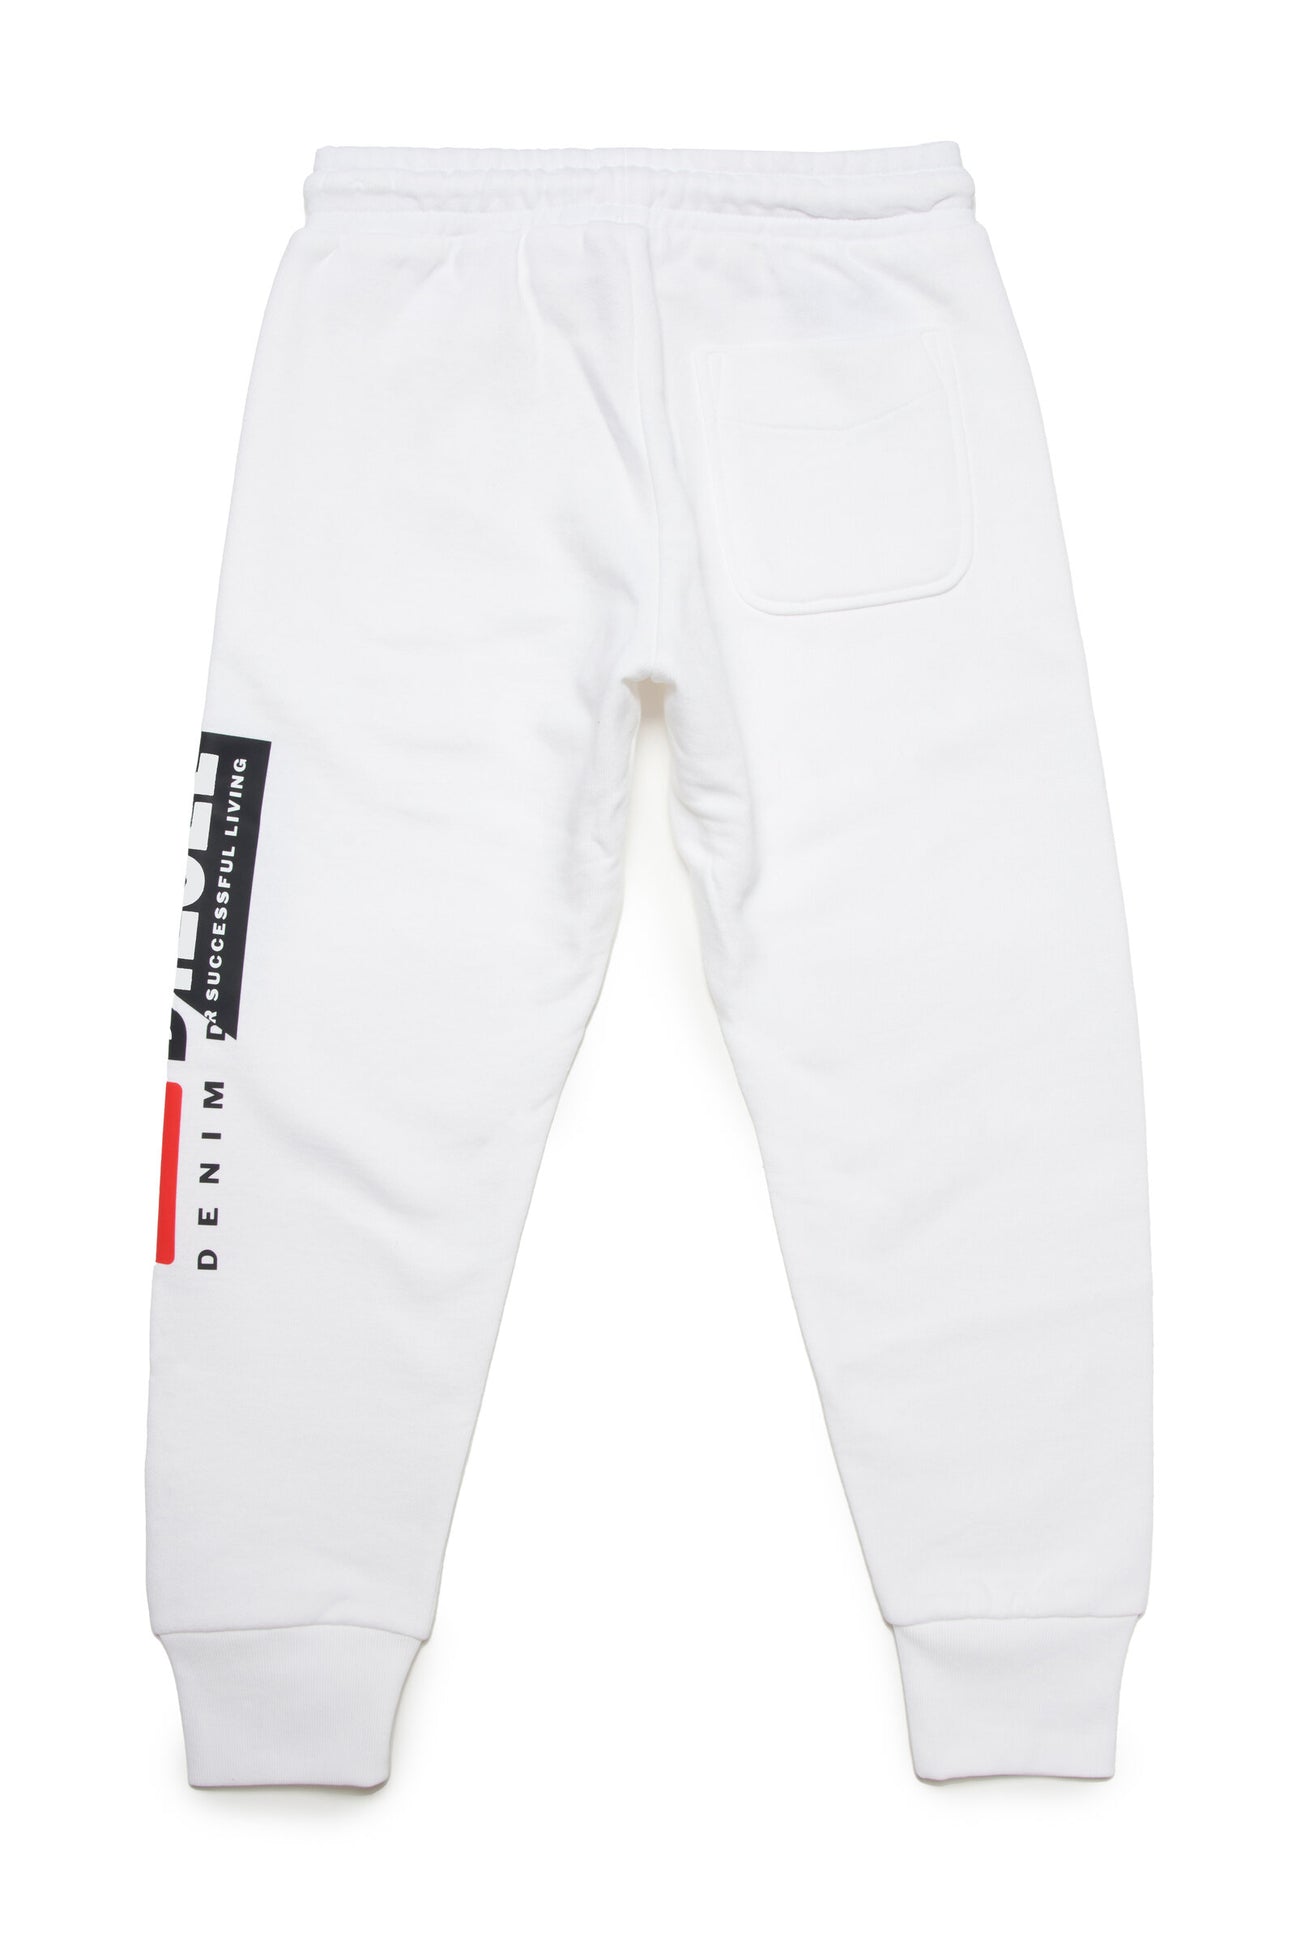 Pantalón jogger blanco con logo Diesel double Pantalón jogger blanco con logo Diesel double